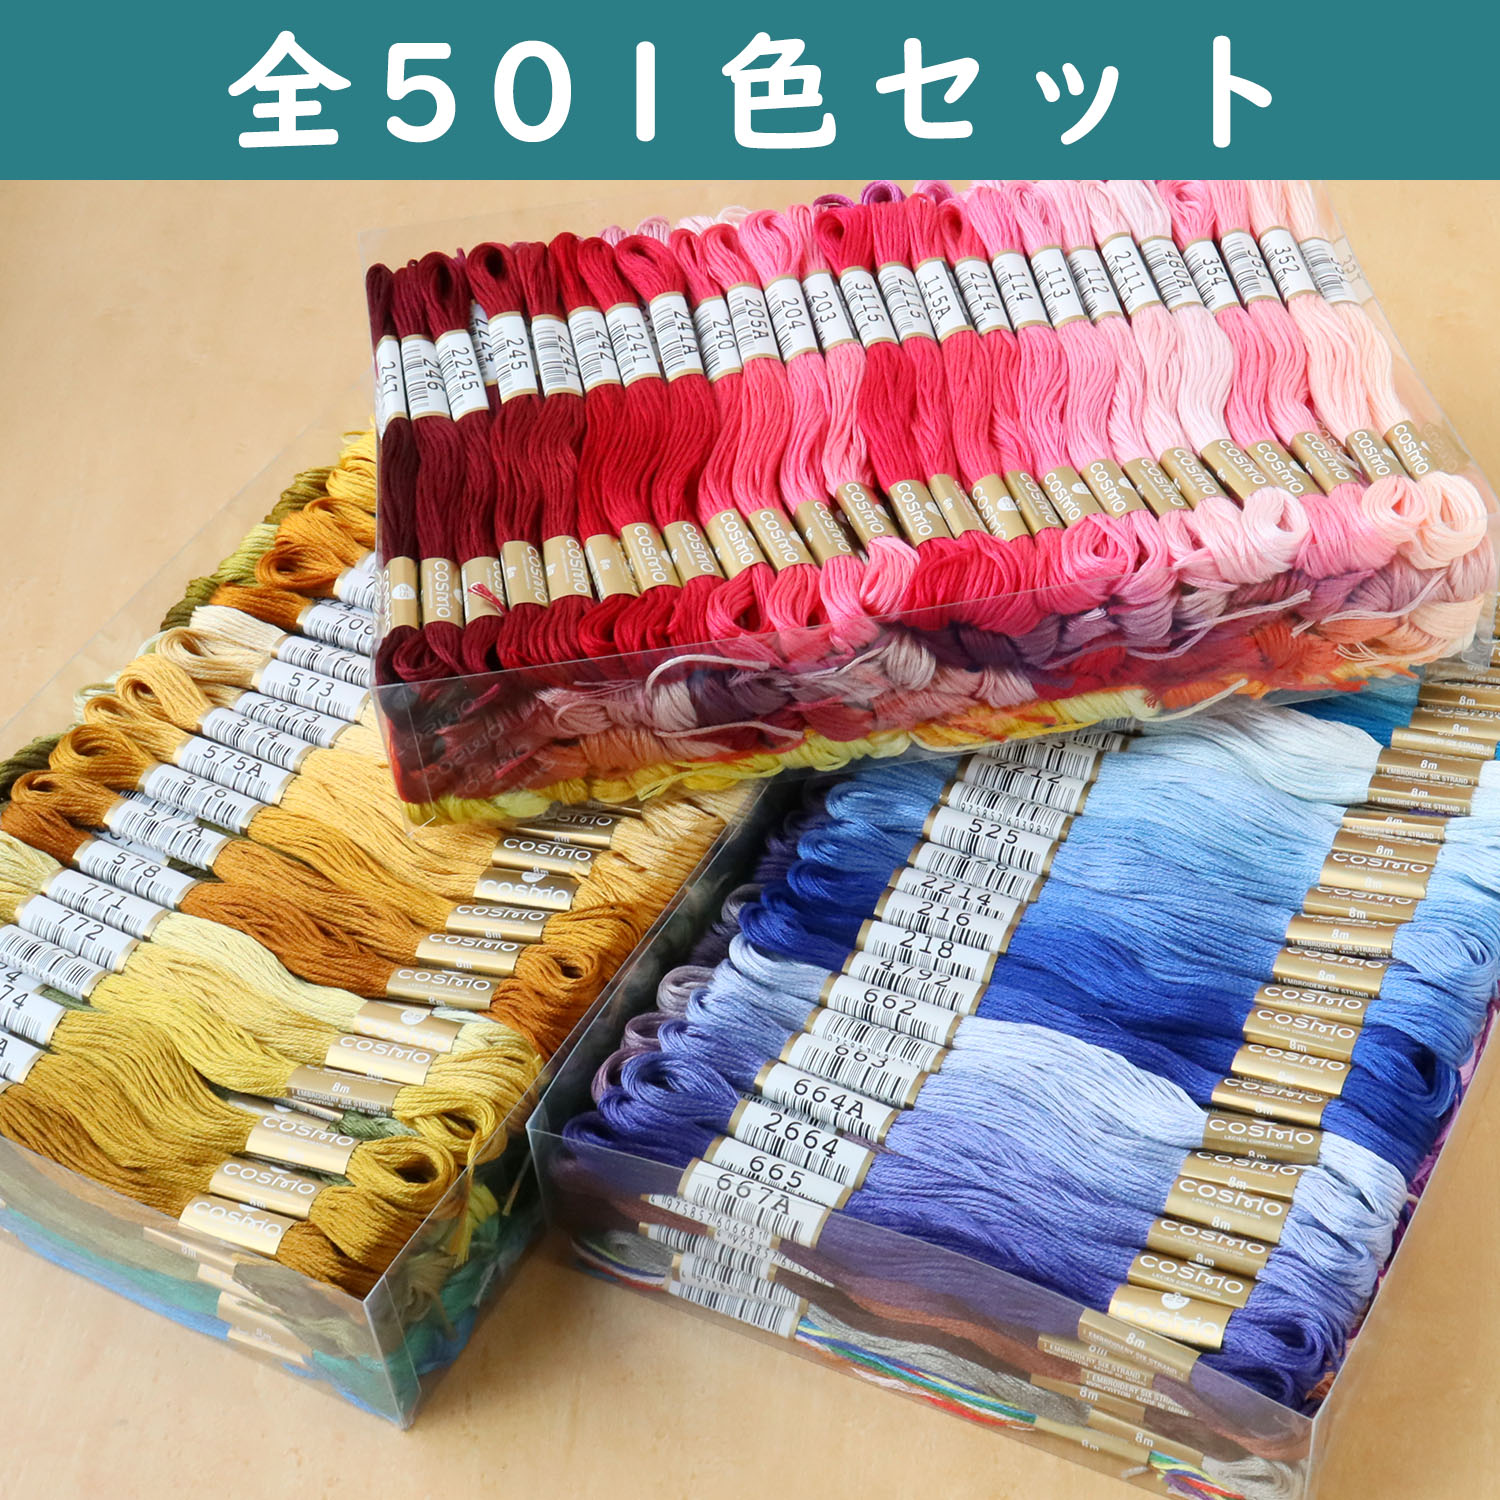 【数量限定】CS25-501SET コスモ 刺しゅう糸 #25 全501色セット (セット)